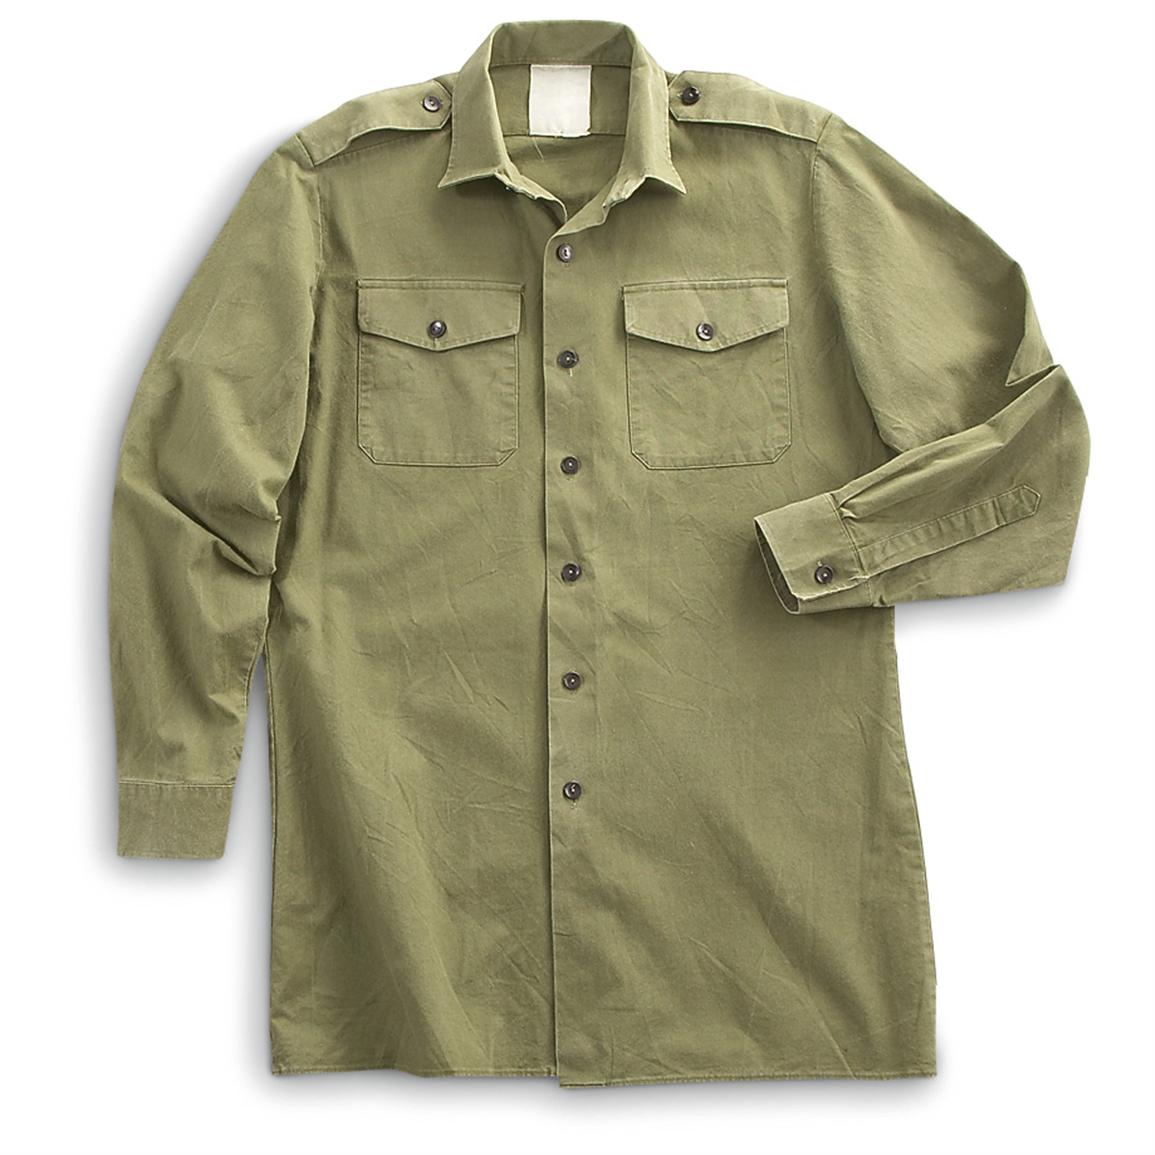 4 Used British Military Field Shirts, Olive Drab - 157468, Shirts at ...